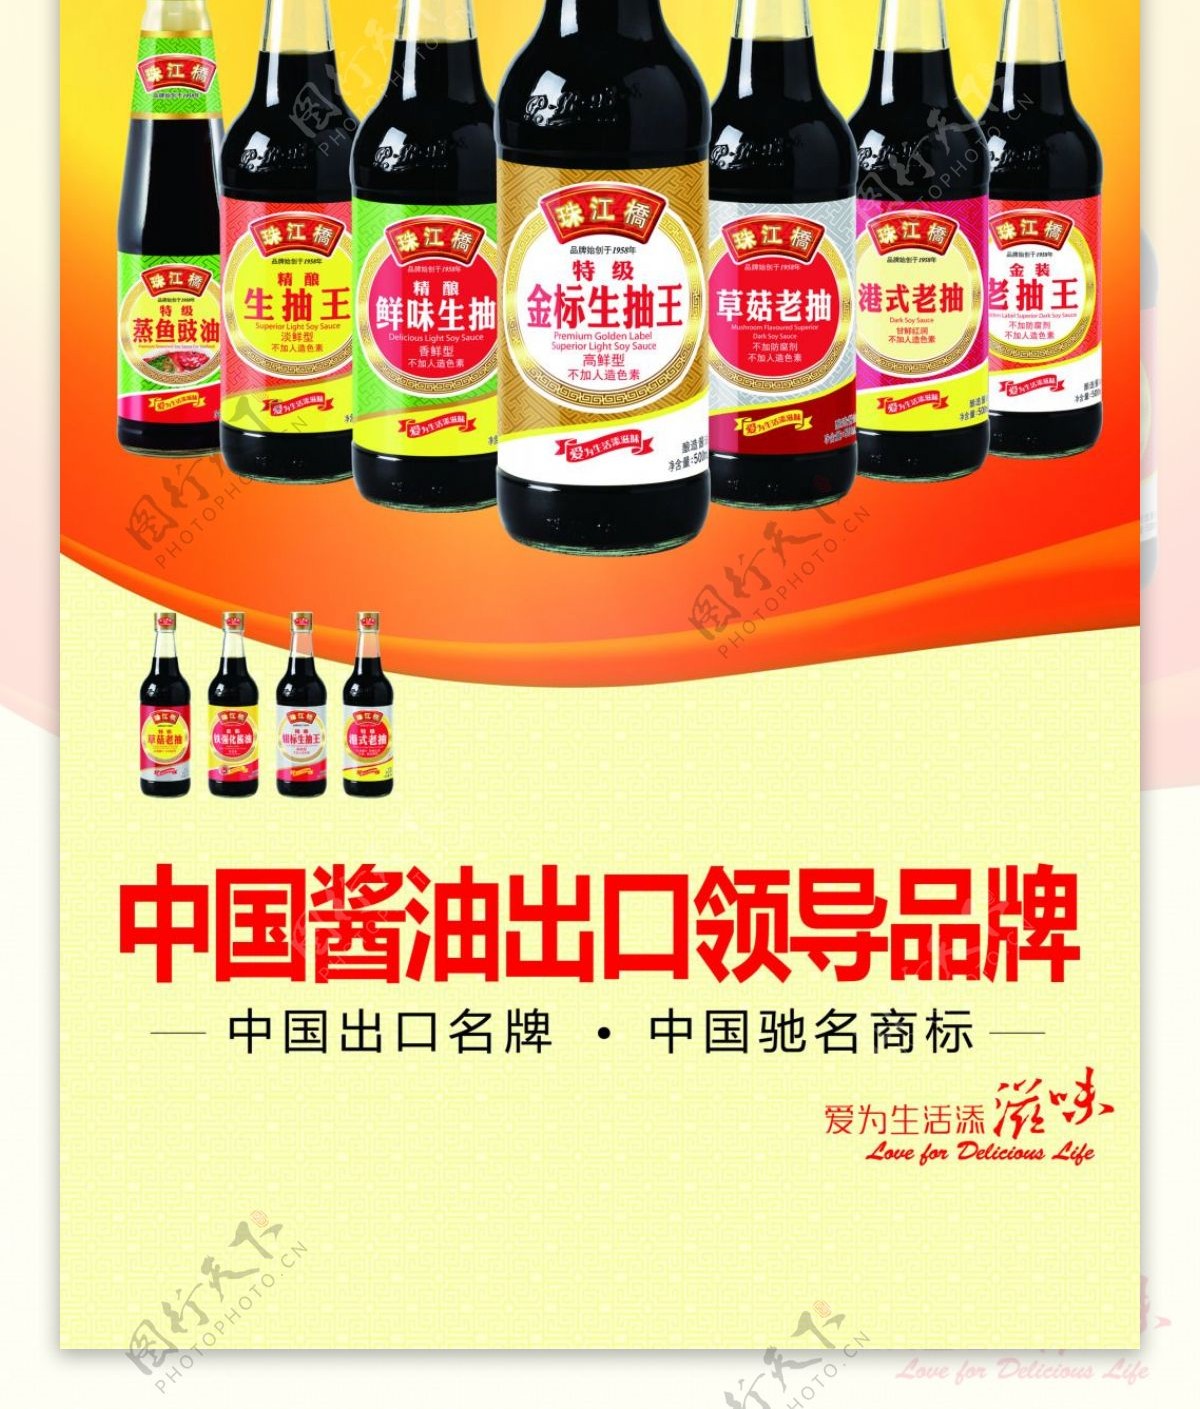 珠江酱油易拉宝广告PSD素材